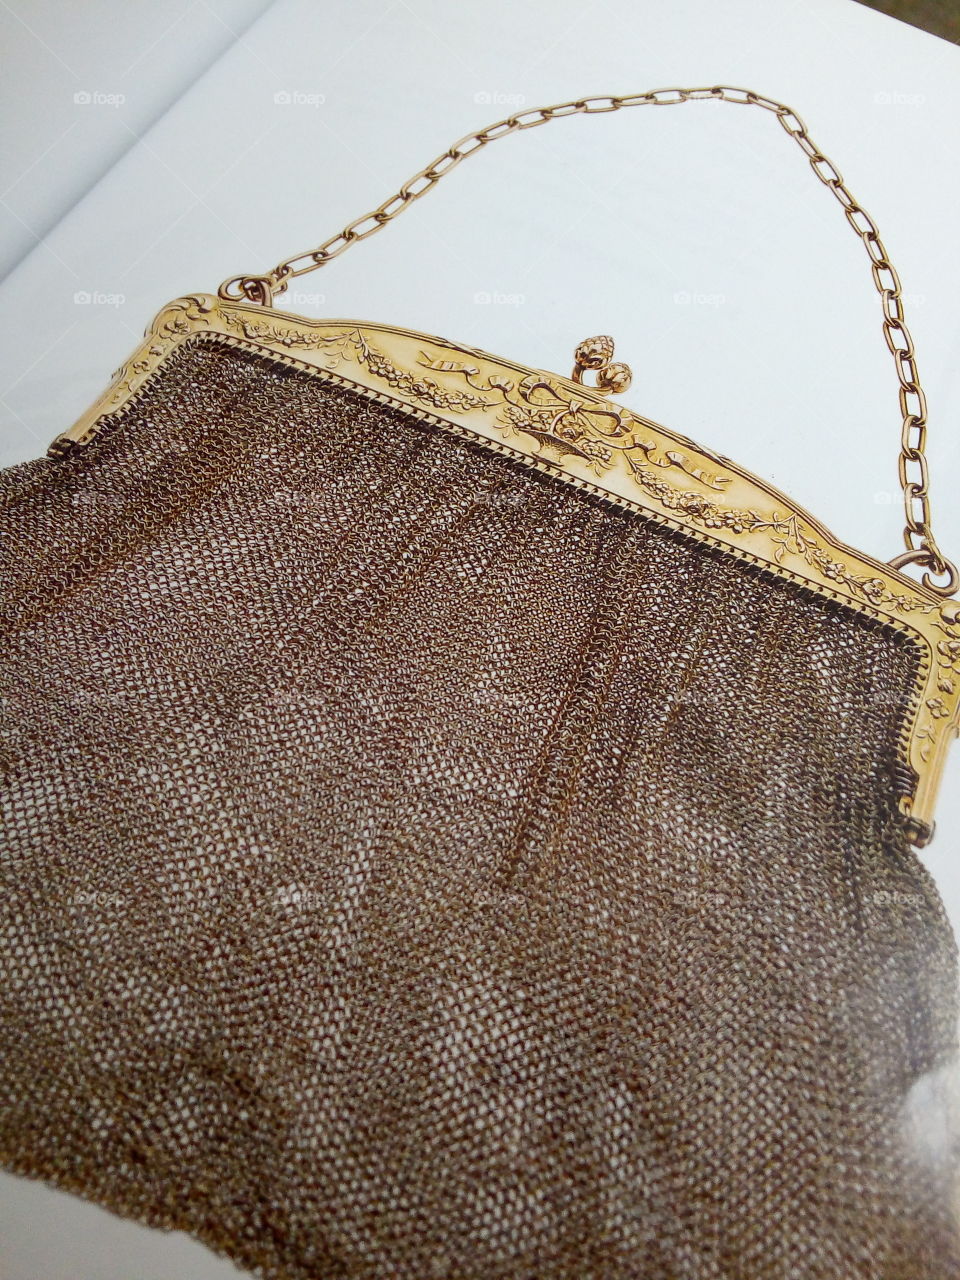 bolsa echa de hilos de oro de 14 kilates, con cadena de oro para colgar y utilizar por una mujer, también el broche es de oro. ideal para moda